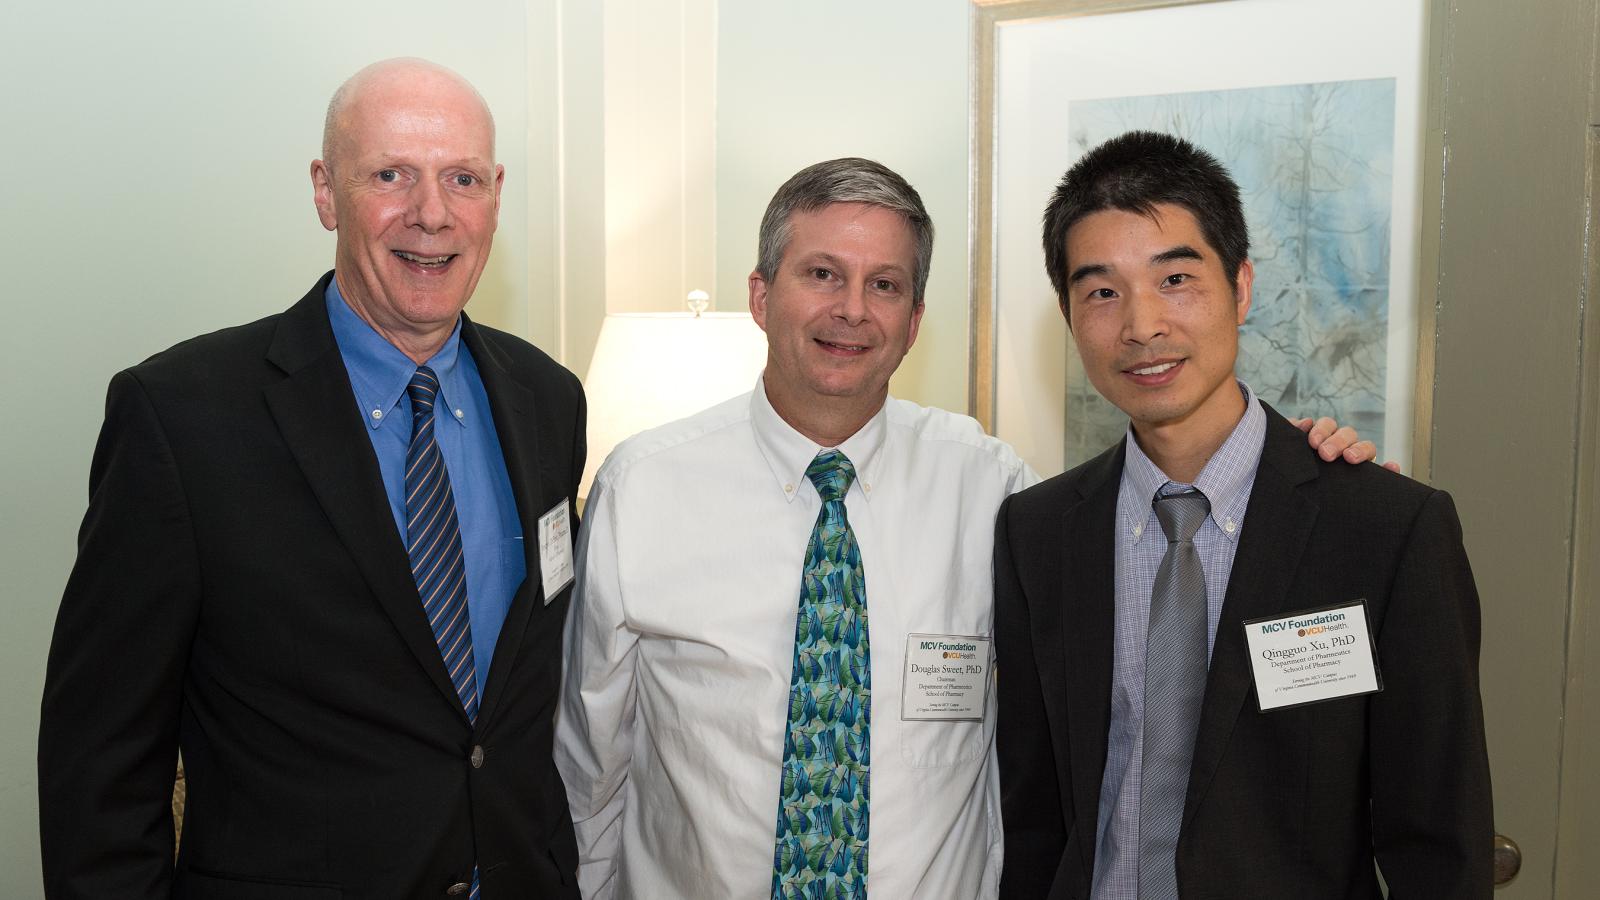 Blick Scholar Qingguo Xu with Dean Joe DiPiro and Douglas Sweet from the VCU School of Pharmacy